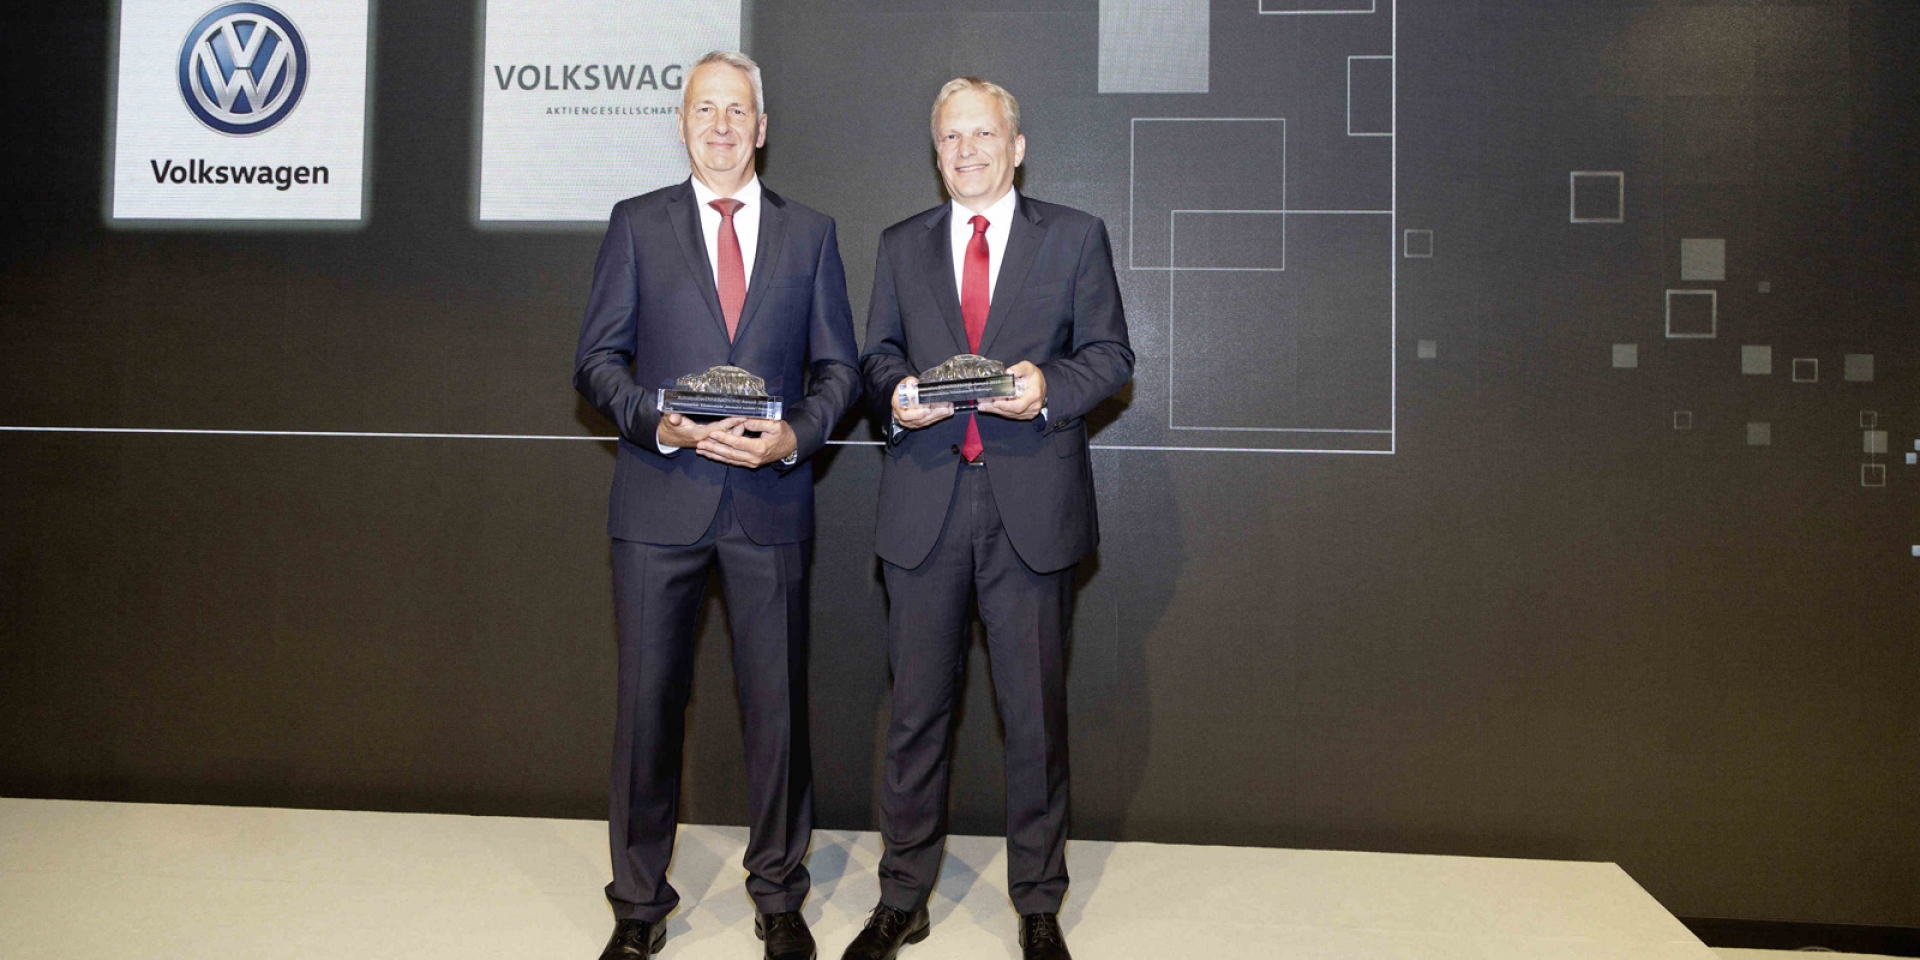 官方新聞稿。Volkswagen以前瞻思維與卓越科技再獲肯定 蟬聯AutomotiveINNOVATIONS最具創新力品牌